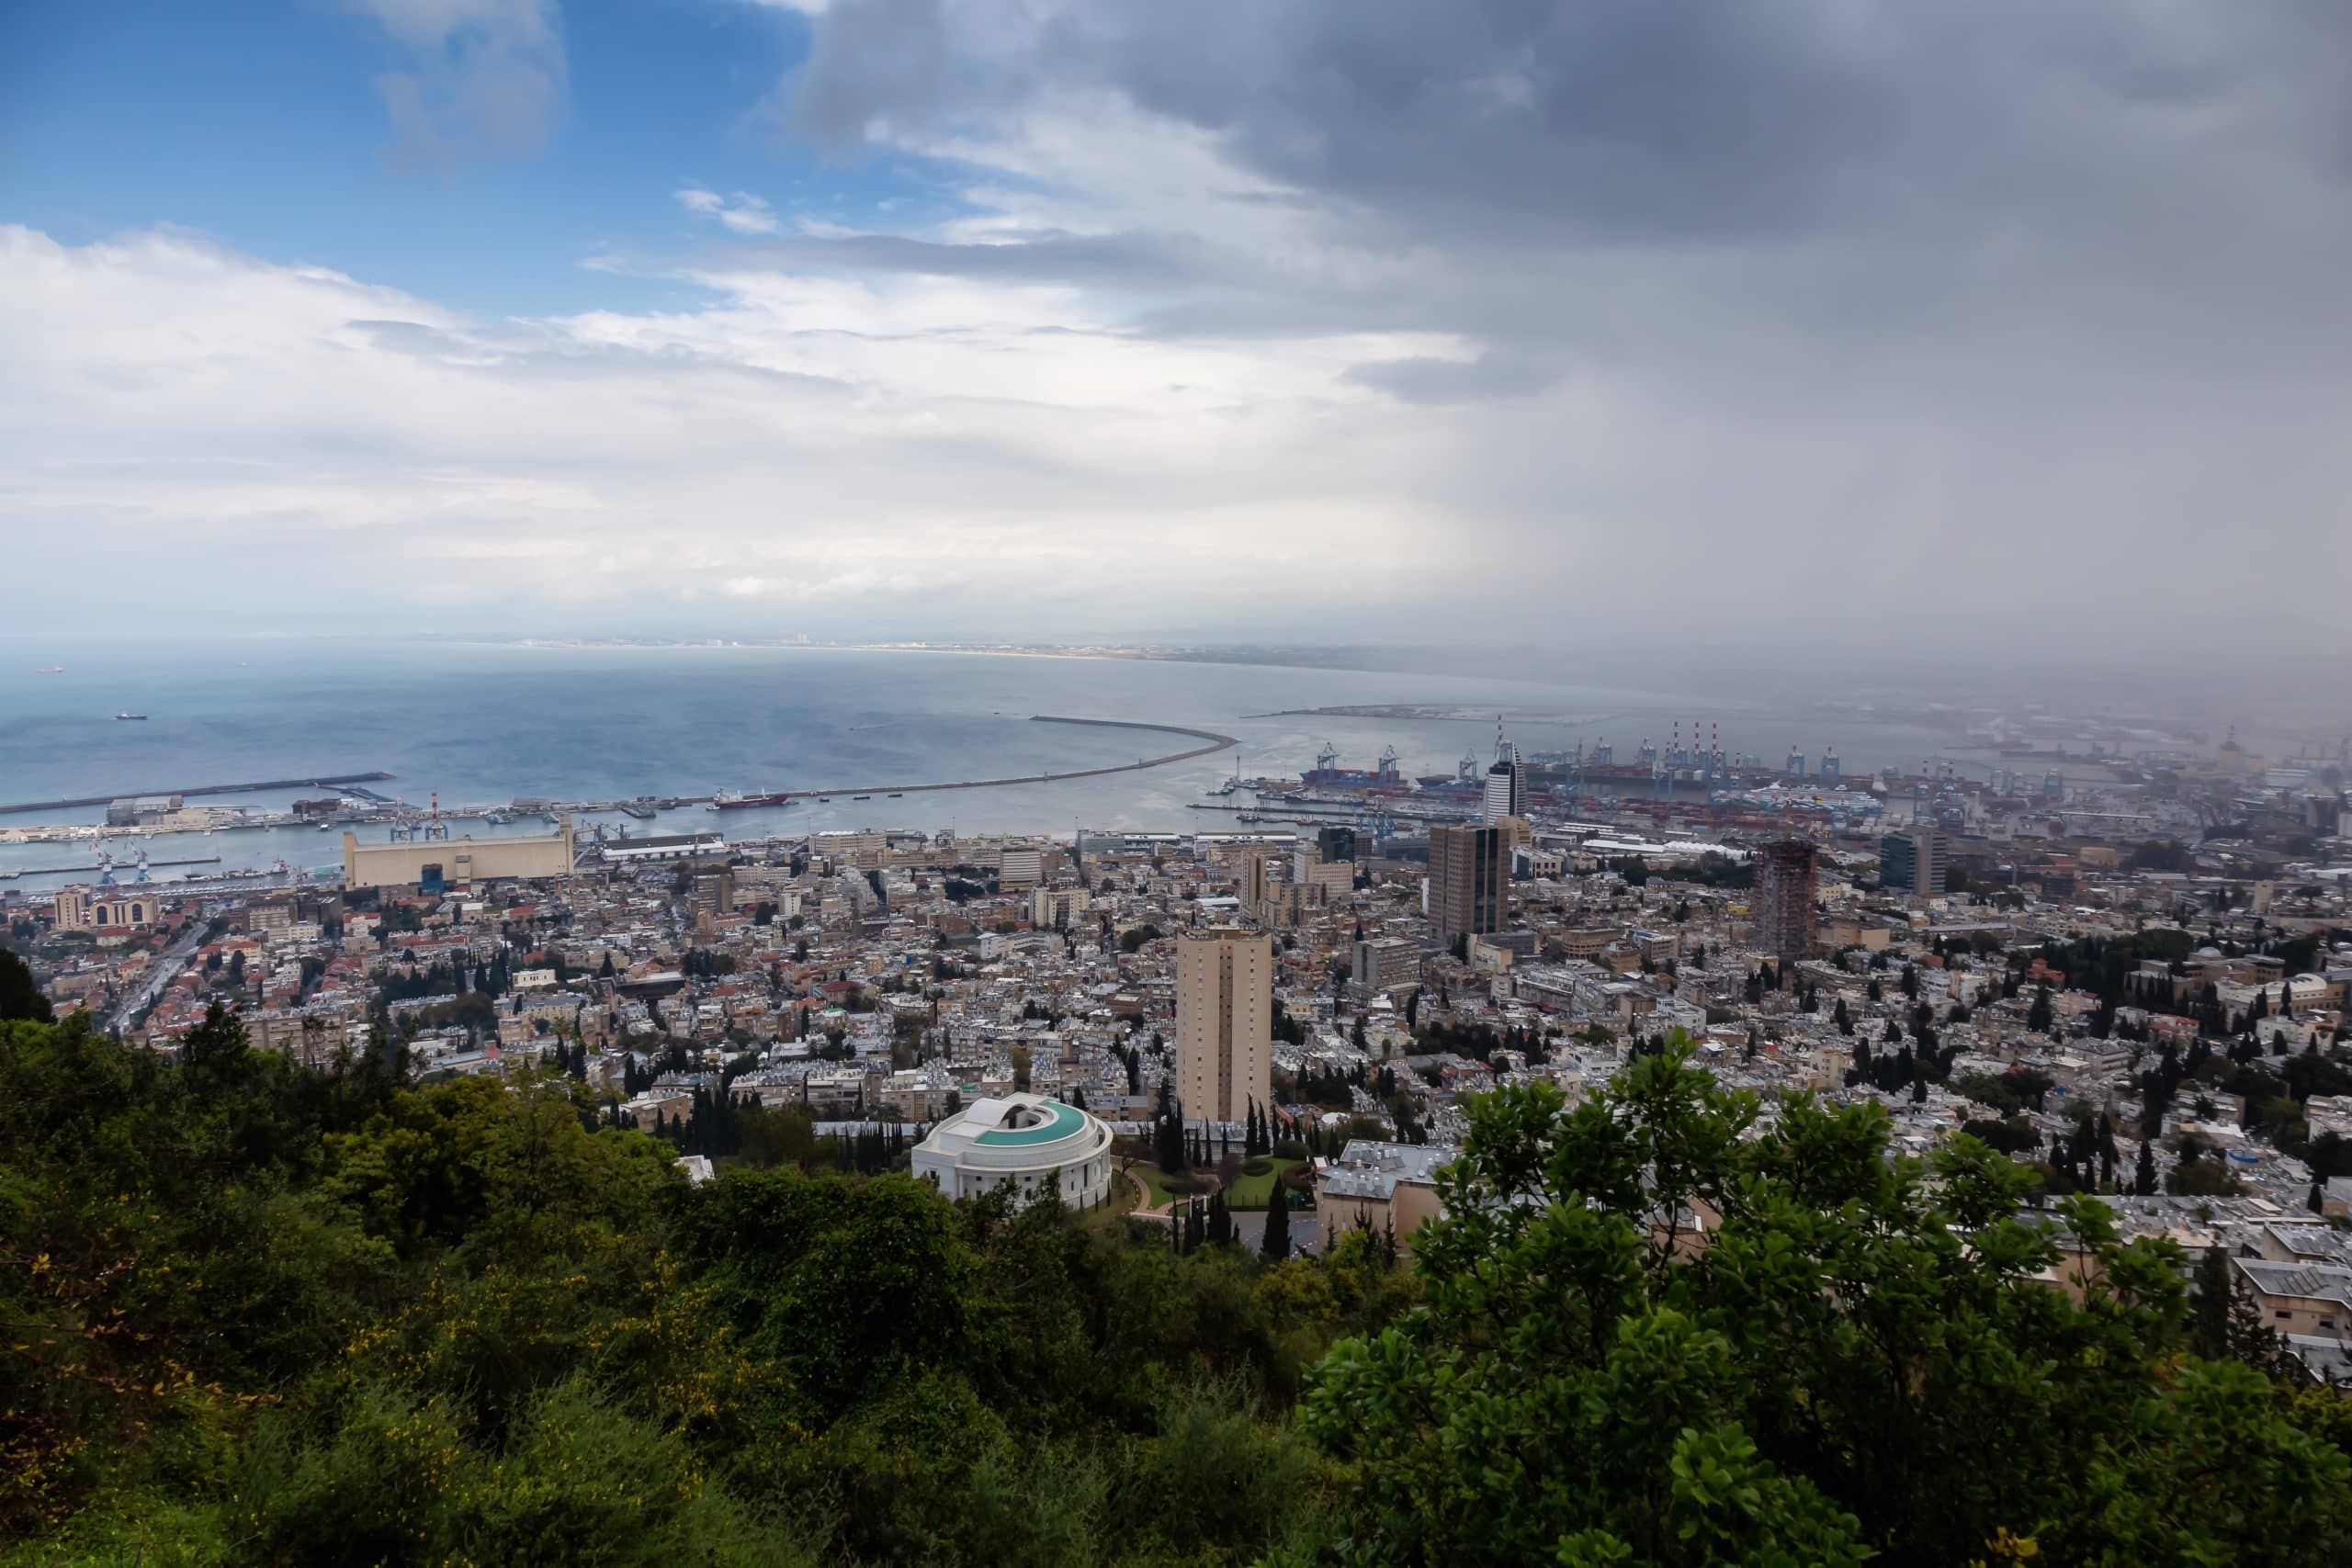 תמונה אוירית של העיר חיפה ונמל חיפה ברקע. עננים רבים בשמיים